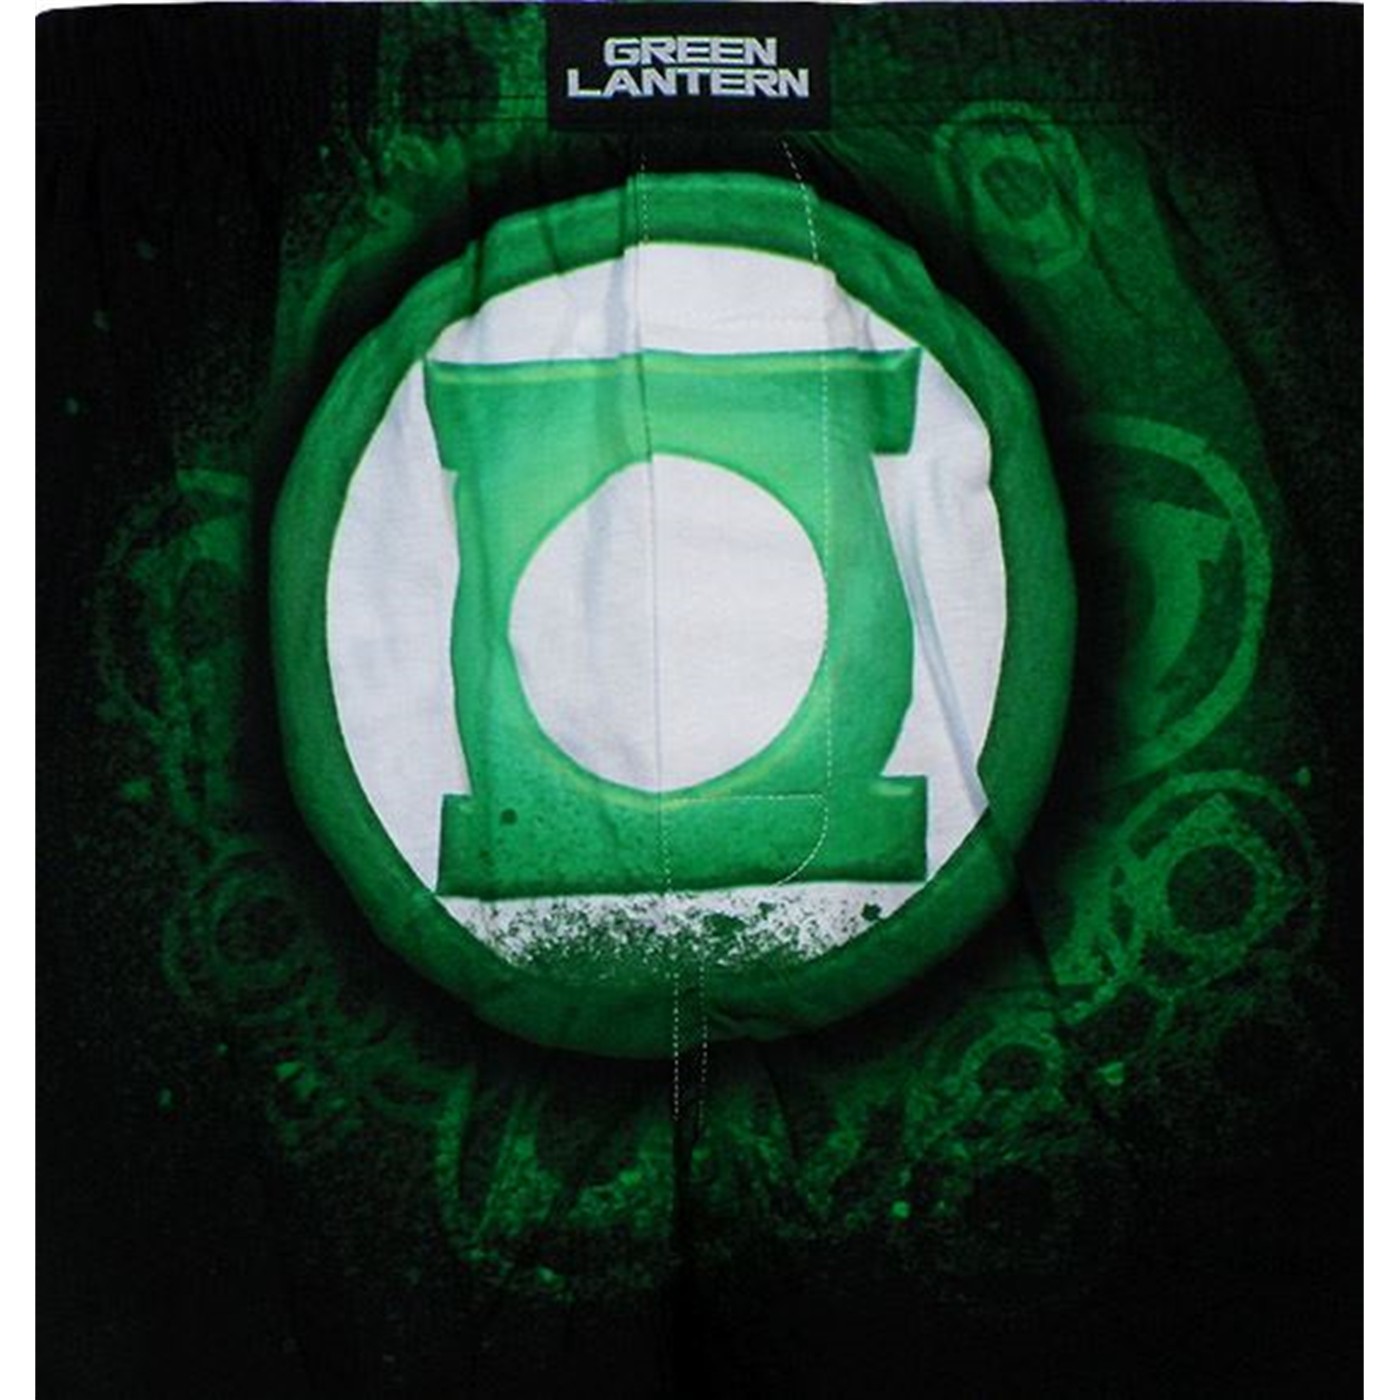 Green Lantern Symbol Painted Boxer Shorts